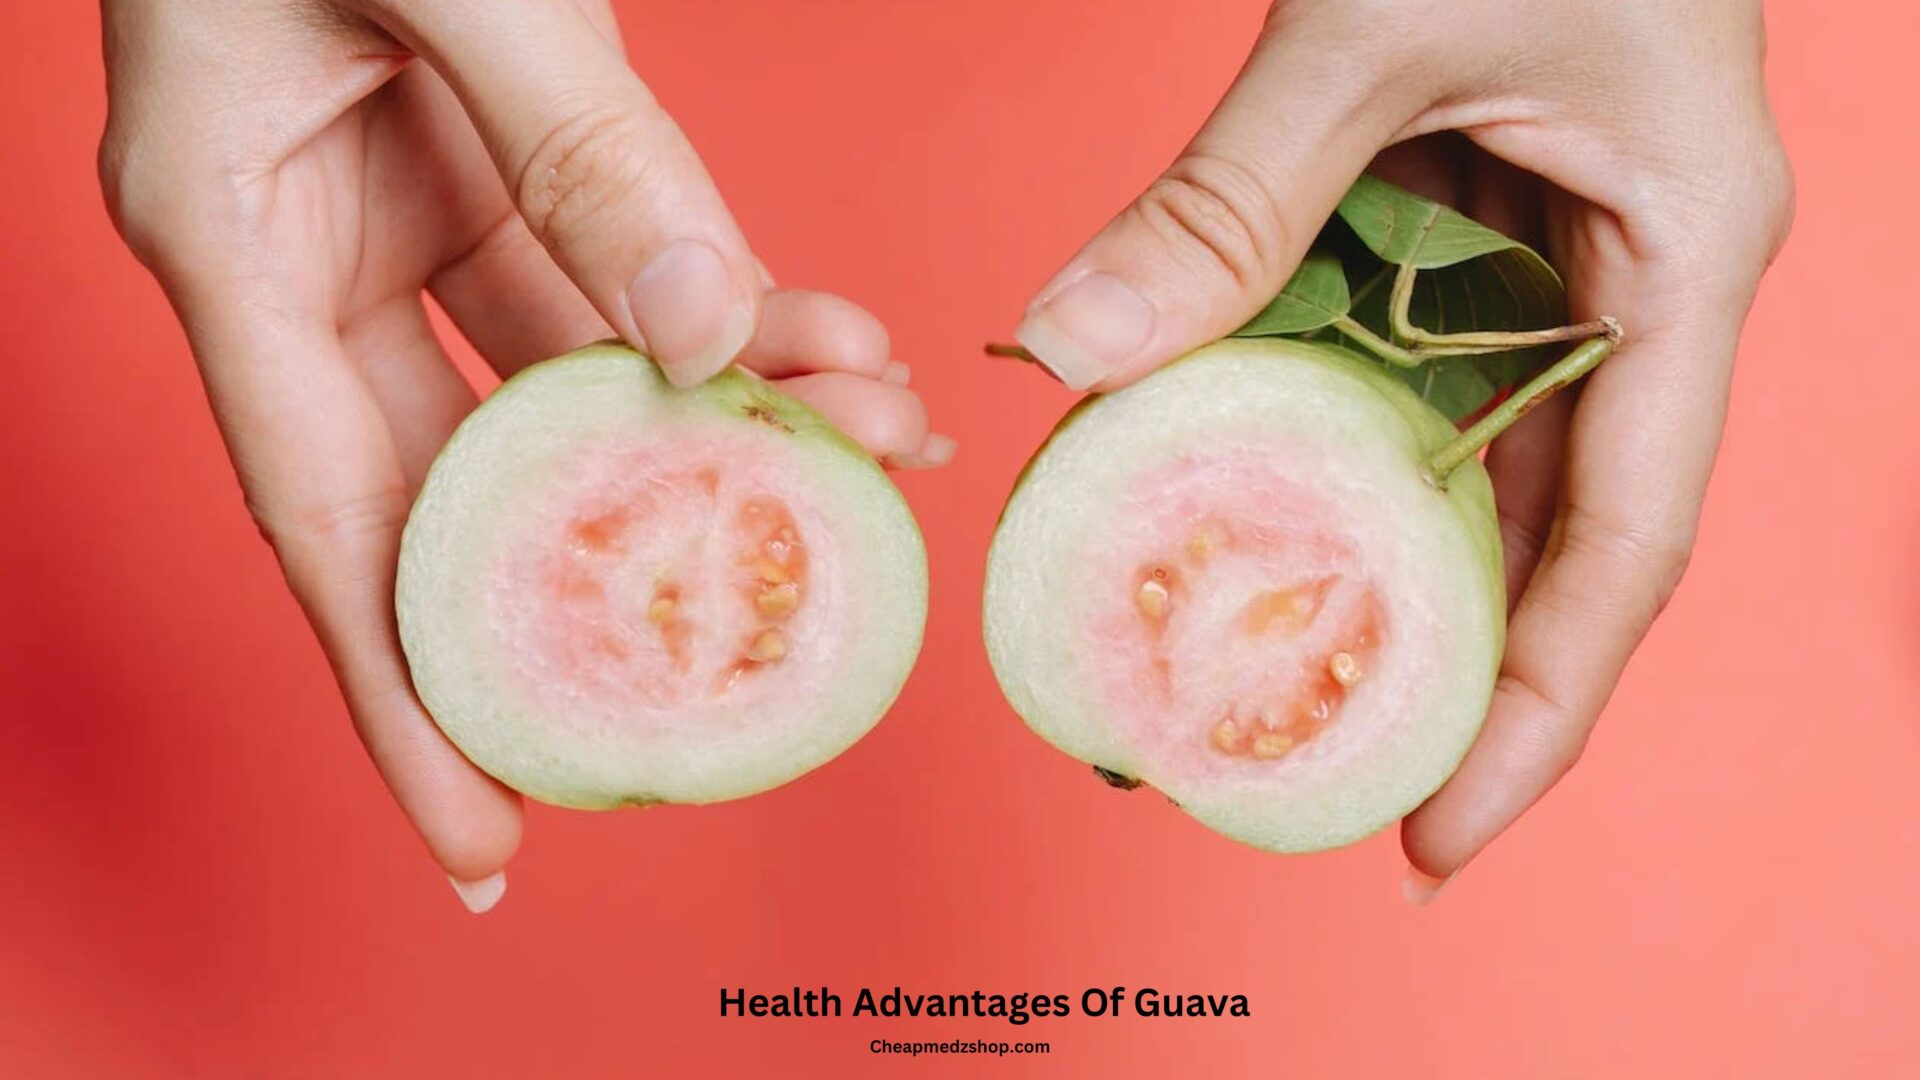 Health Advantages Of Guava